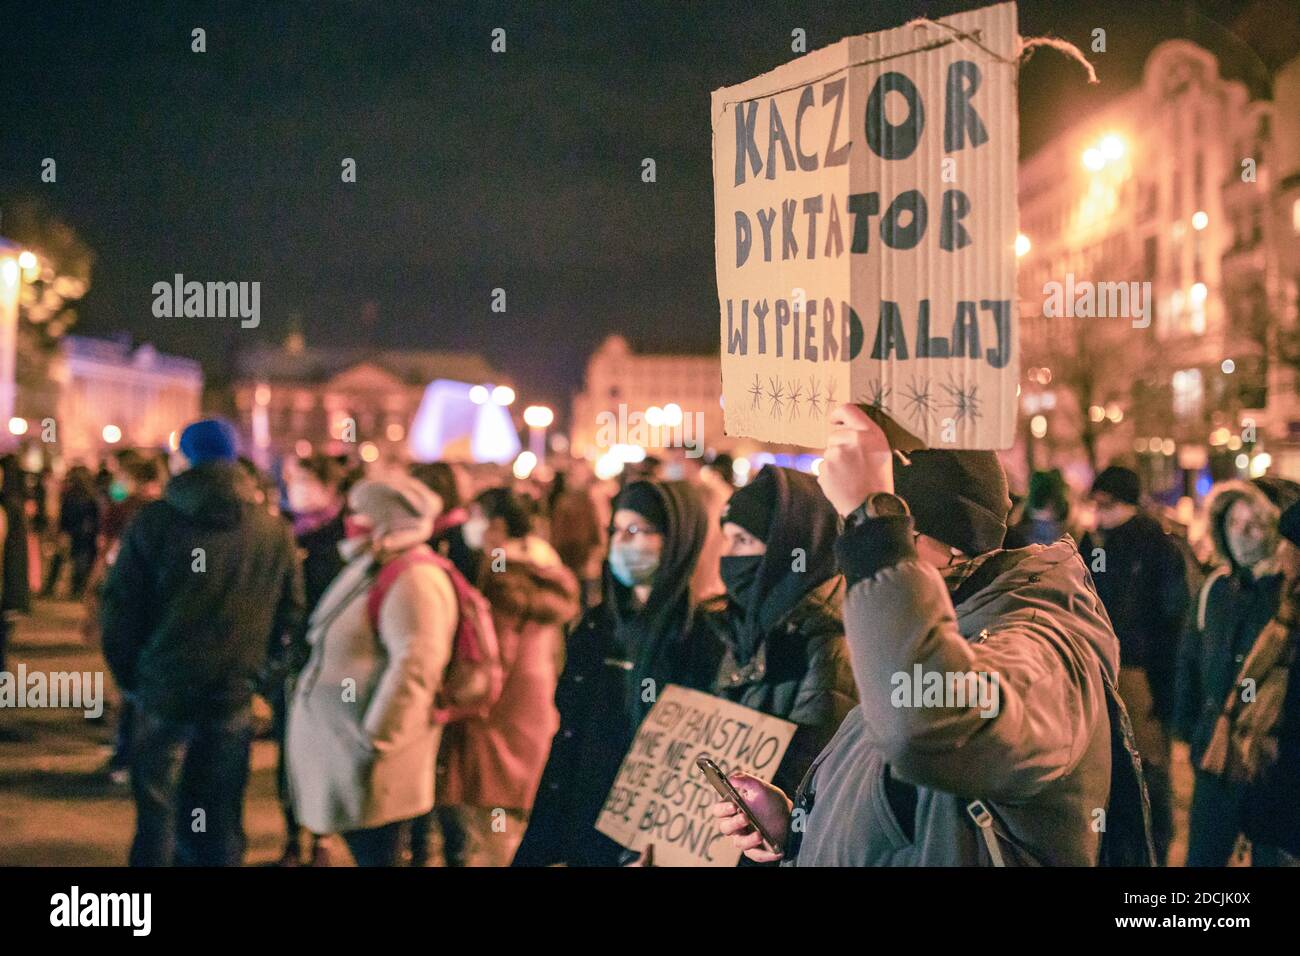 Poznan / Polonia - 21.11.2020: Manifestazione contro il divieto totale di aborto, le donne protestano contro le restrizioni ai diritti delle donne. Foto Stock